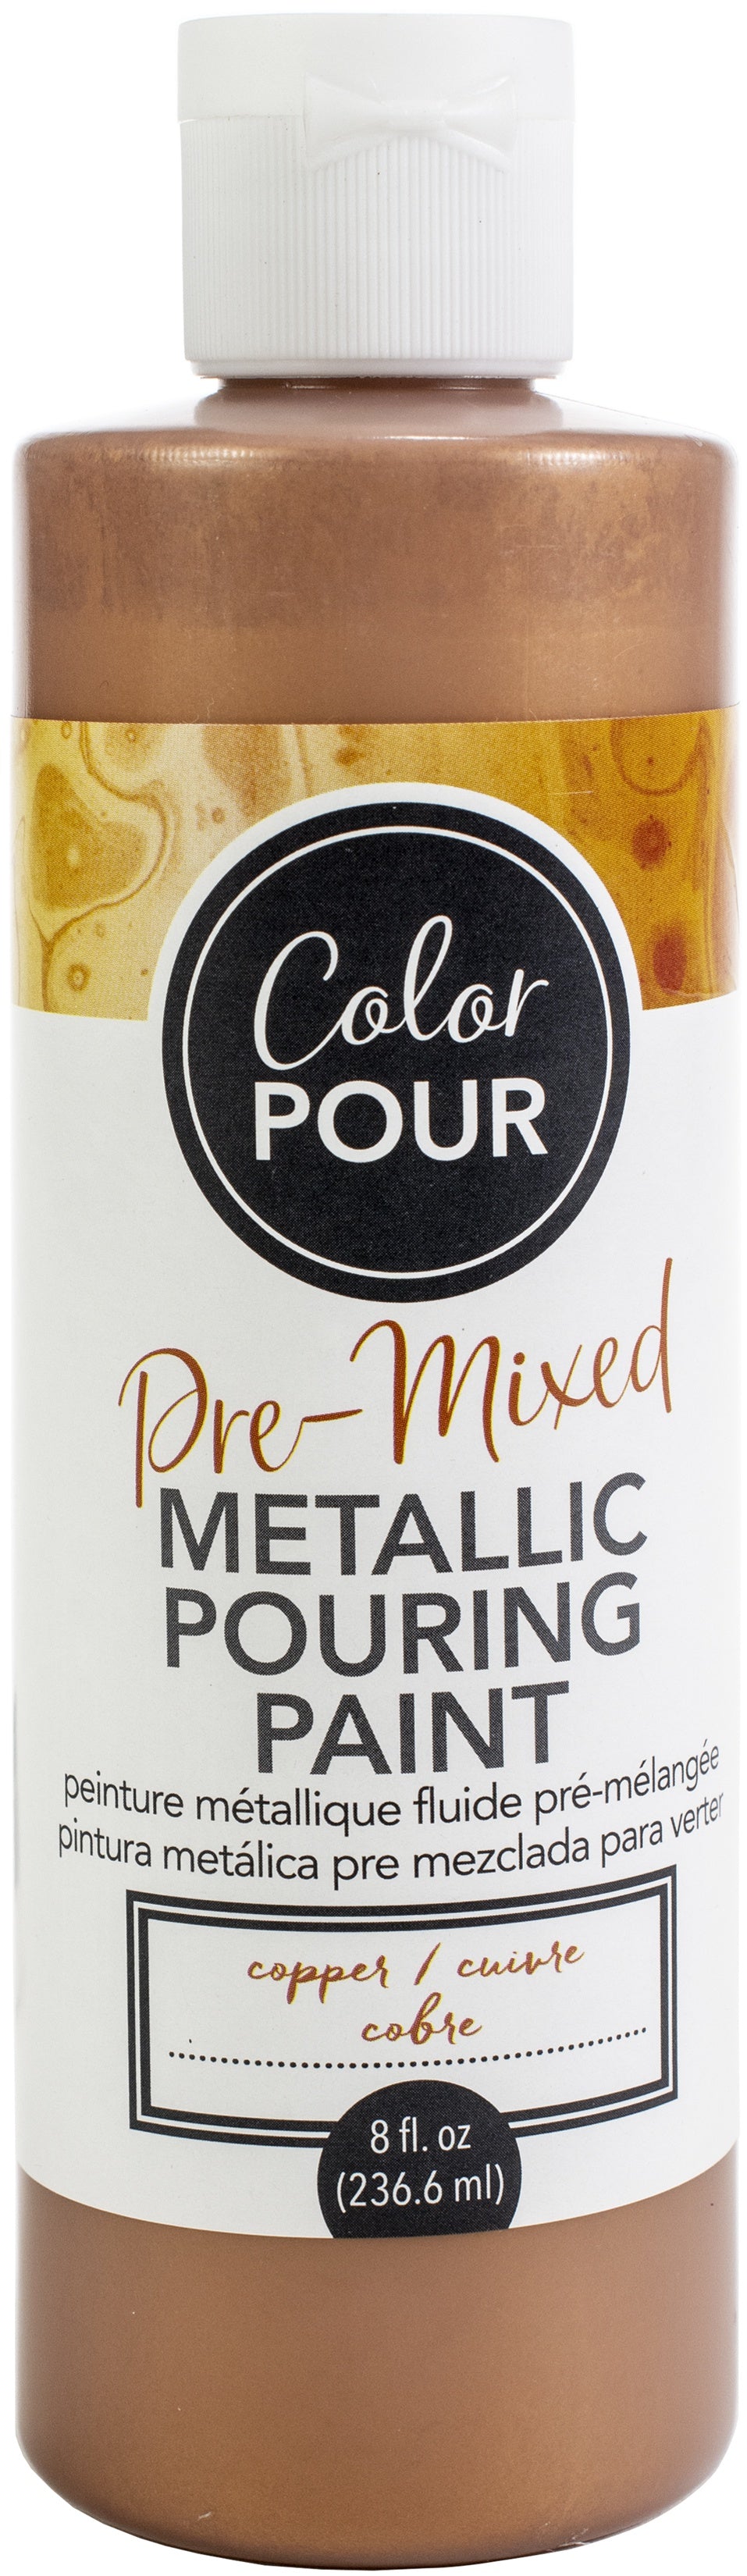 American Crafts Color Pour Pre-Mixed Metallic Paint 8oz-Copper